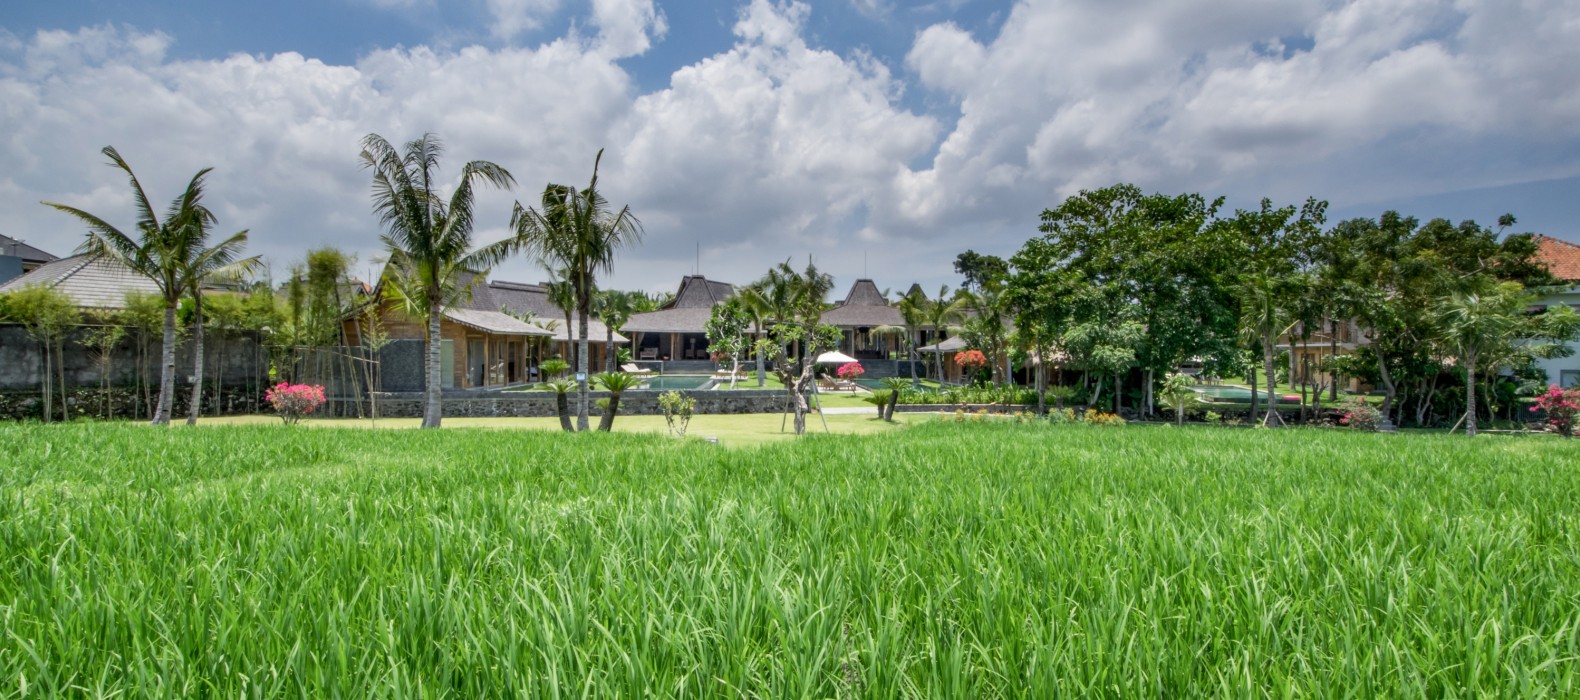 Landscape view of Villa Manoa Estate in Bali